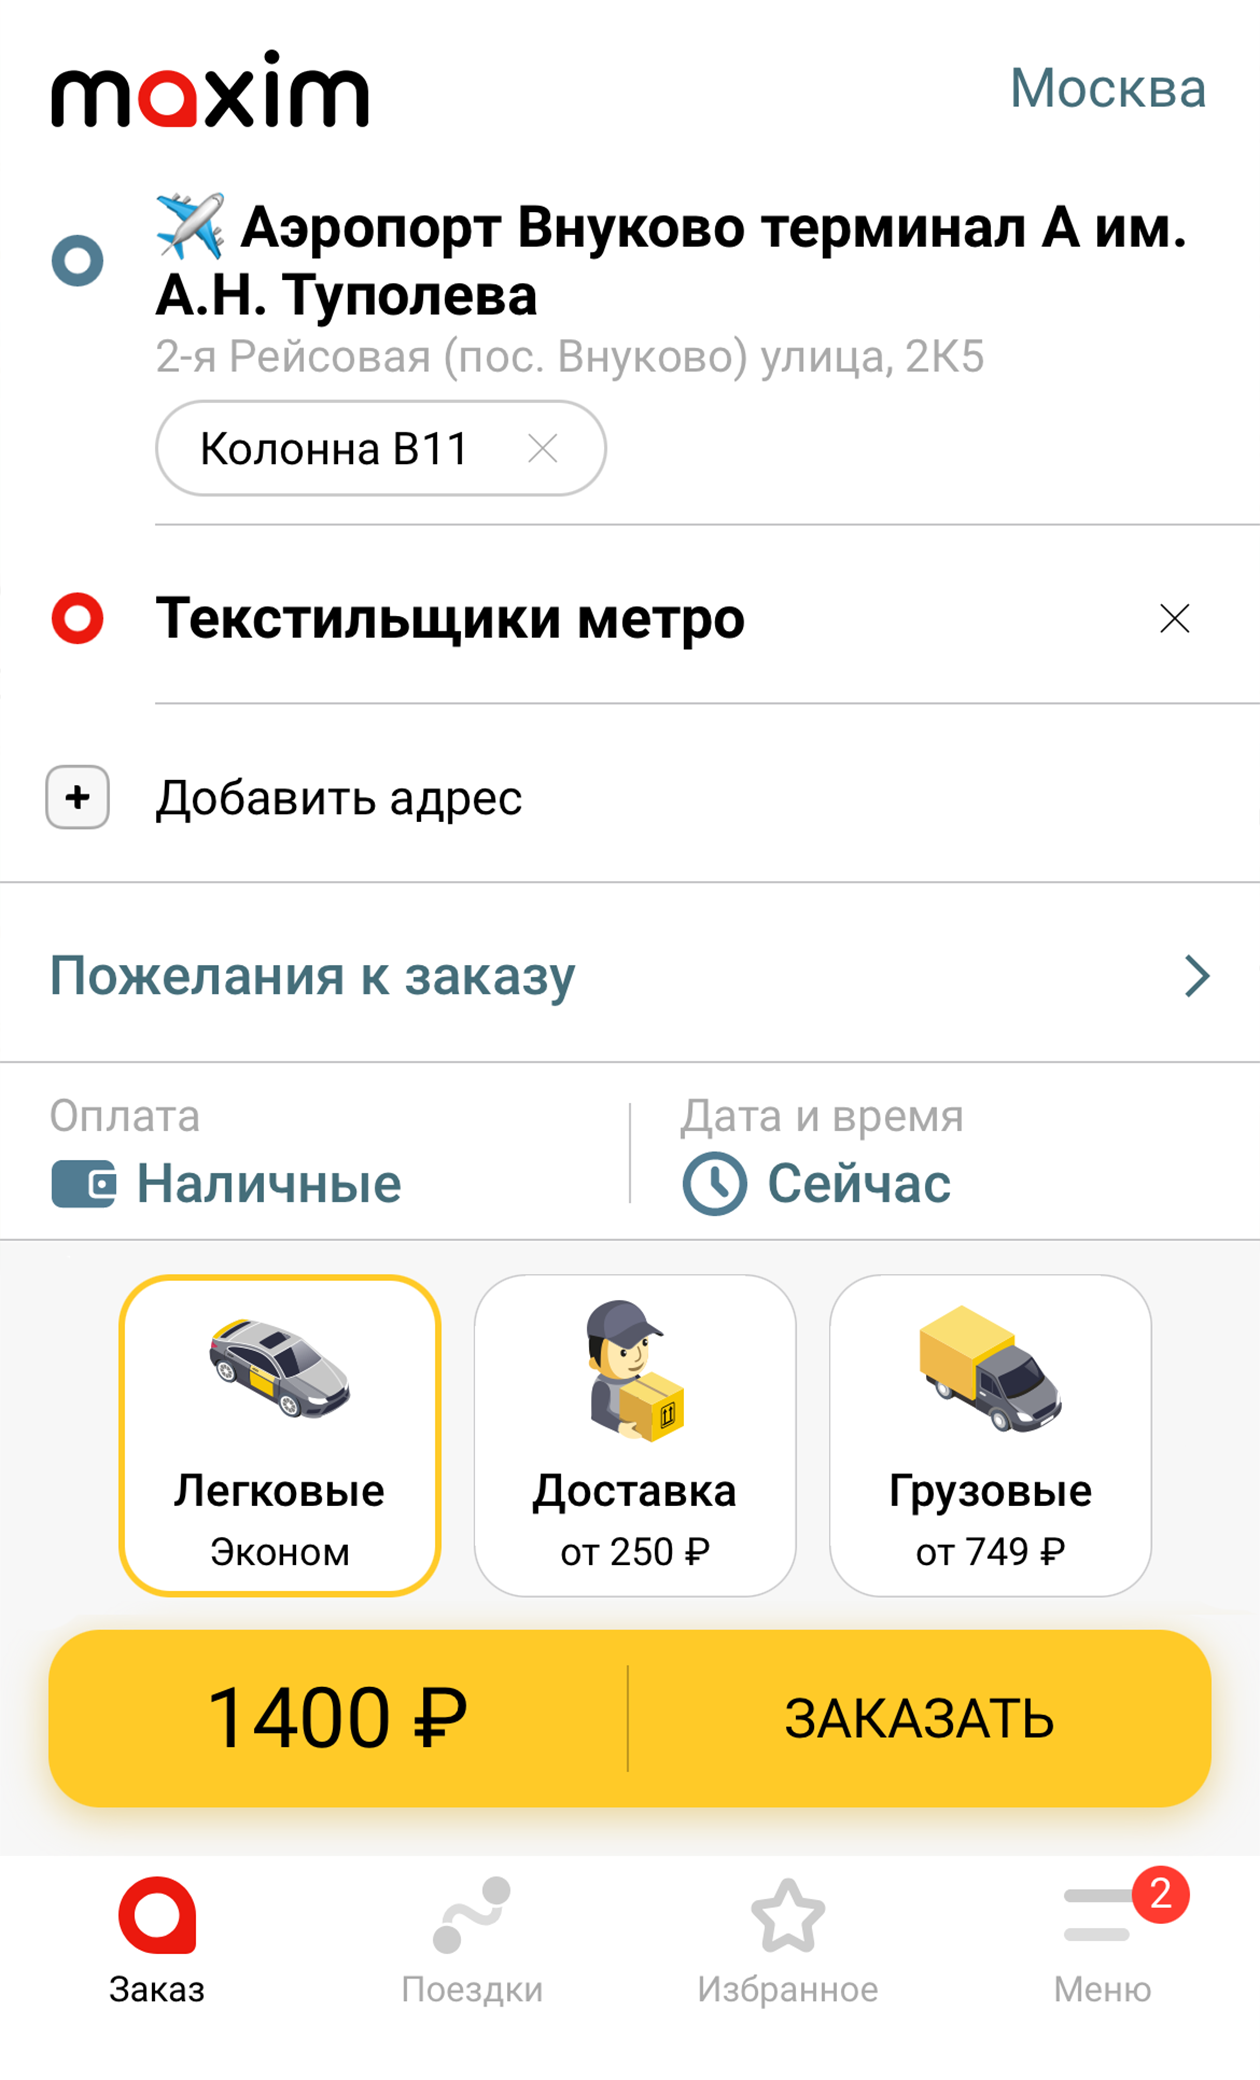 На сайте такси «Максим» такая же поездка стоила 1400 ₽. Источник: taximaxim.ru